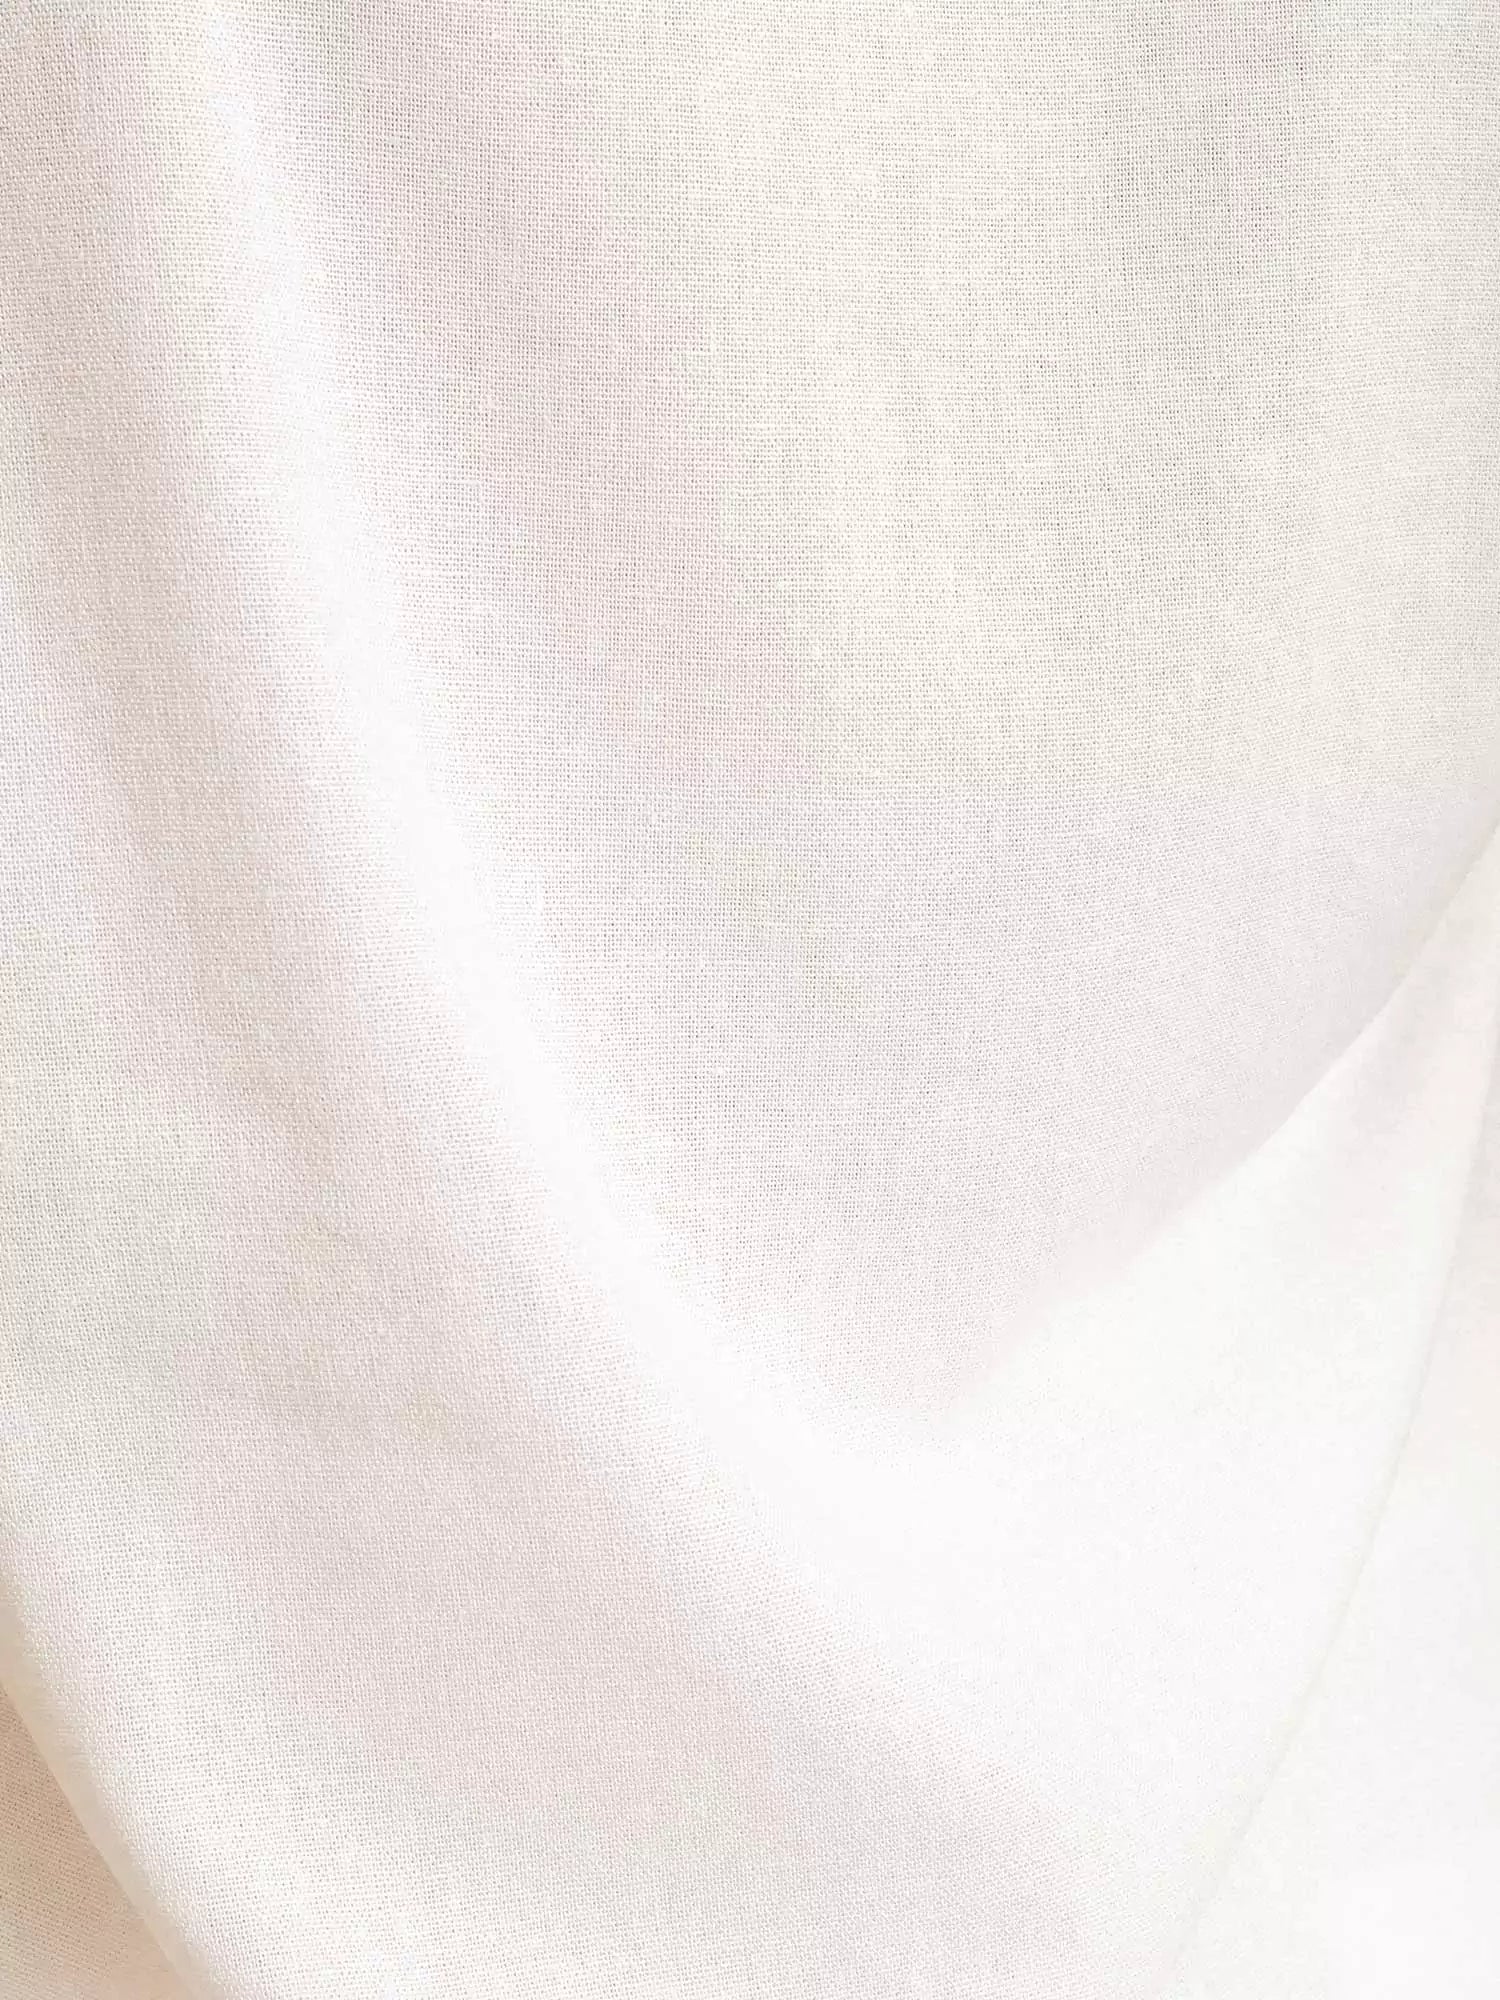 Vestido Midi em Linho & Viscose FSC™ Branco Off White. Compre online moda sustentável e atemporal na Minimadeia. Roupas femininas estilosas, básicas e sustentáveis. Foto produto 08